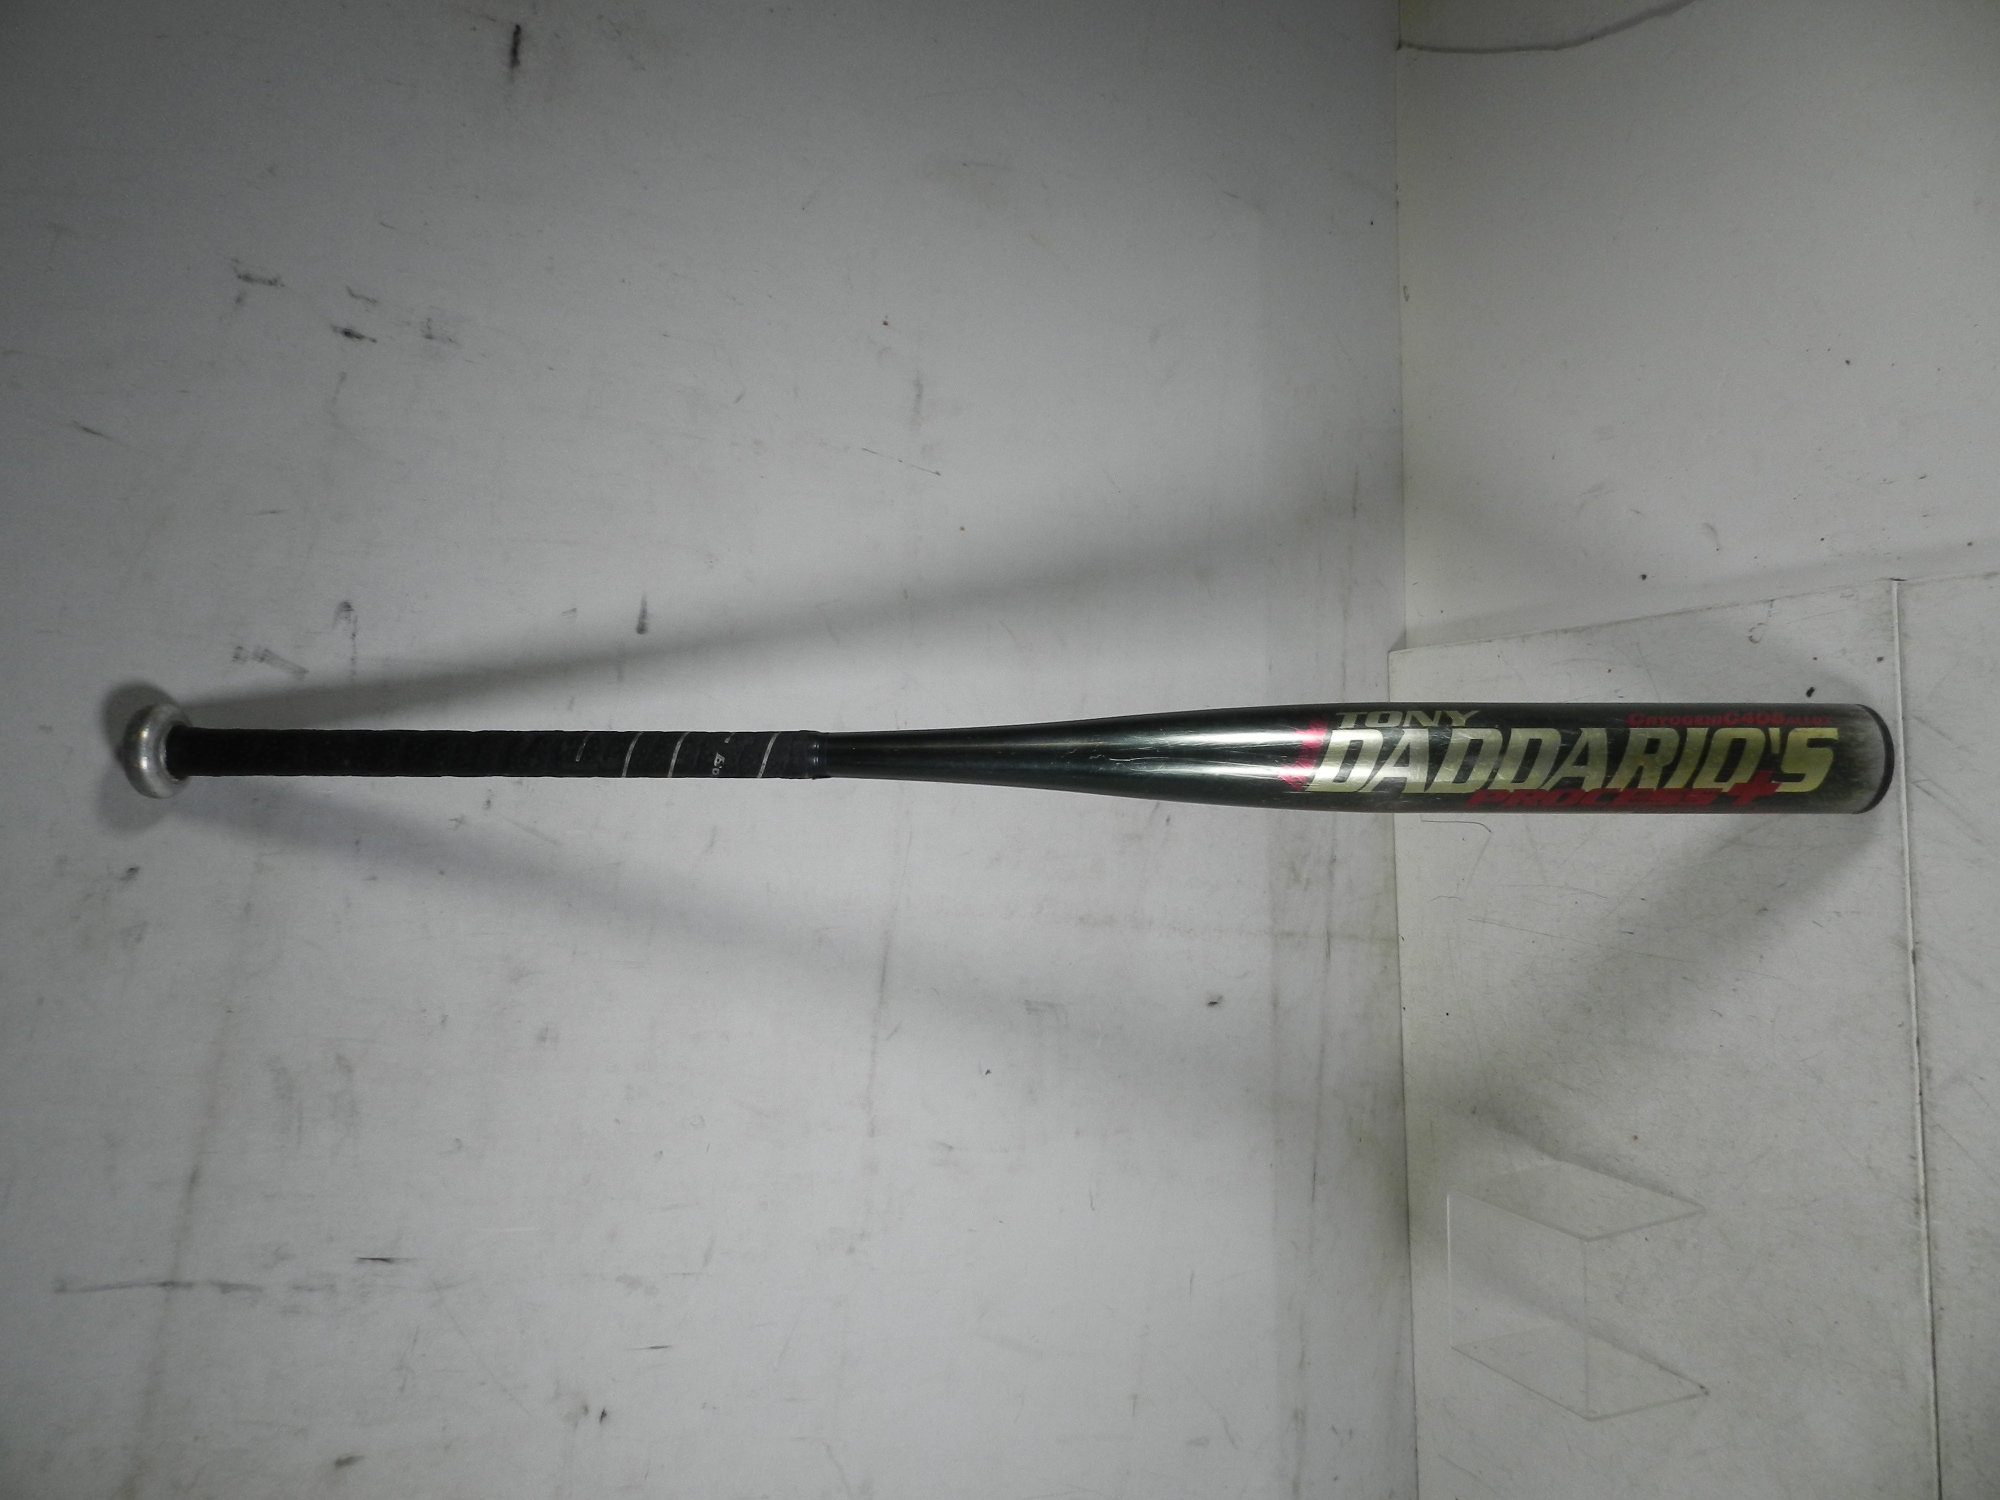 Bombat Tony Daddario's Softball Bat Cryogenic C405 Alloy Process Plus Model 40